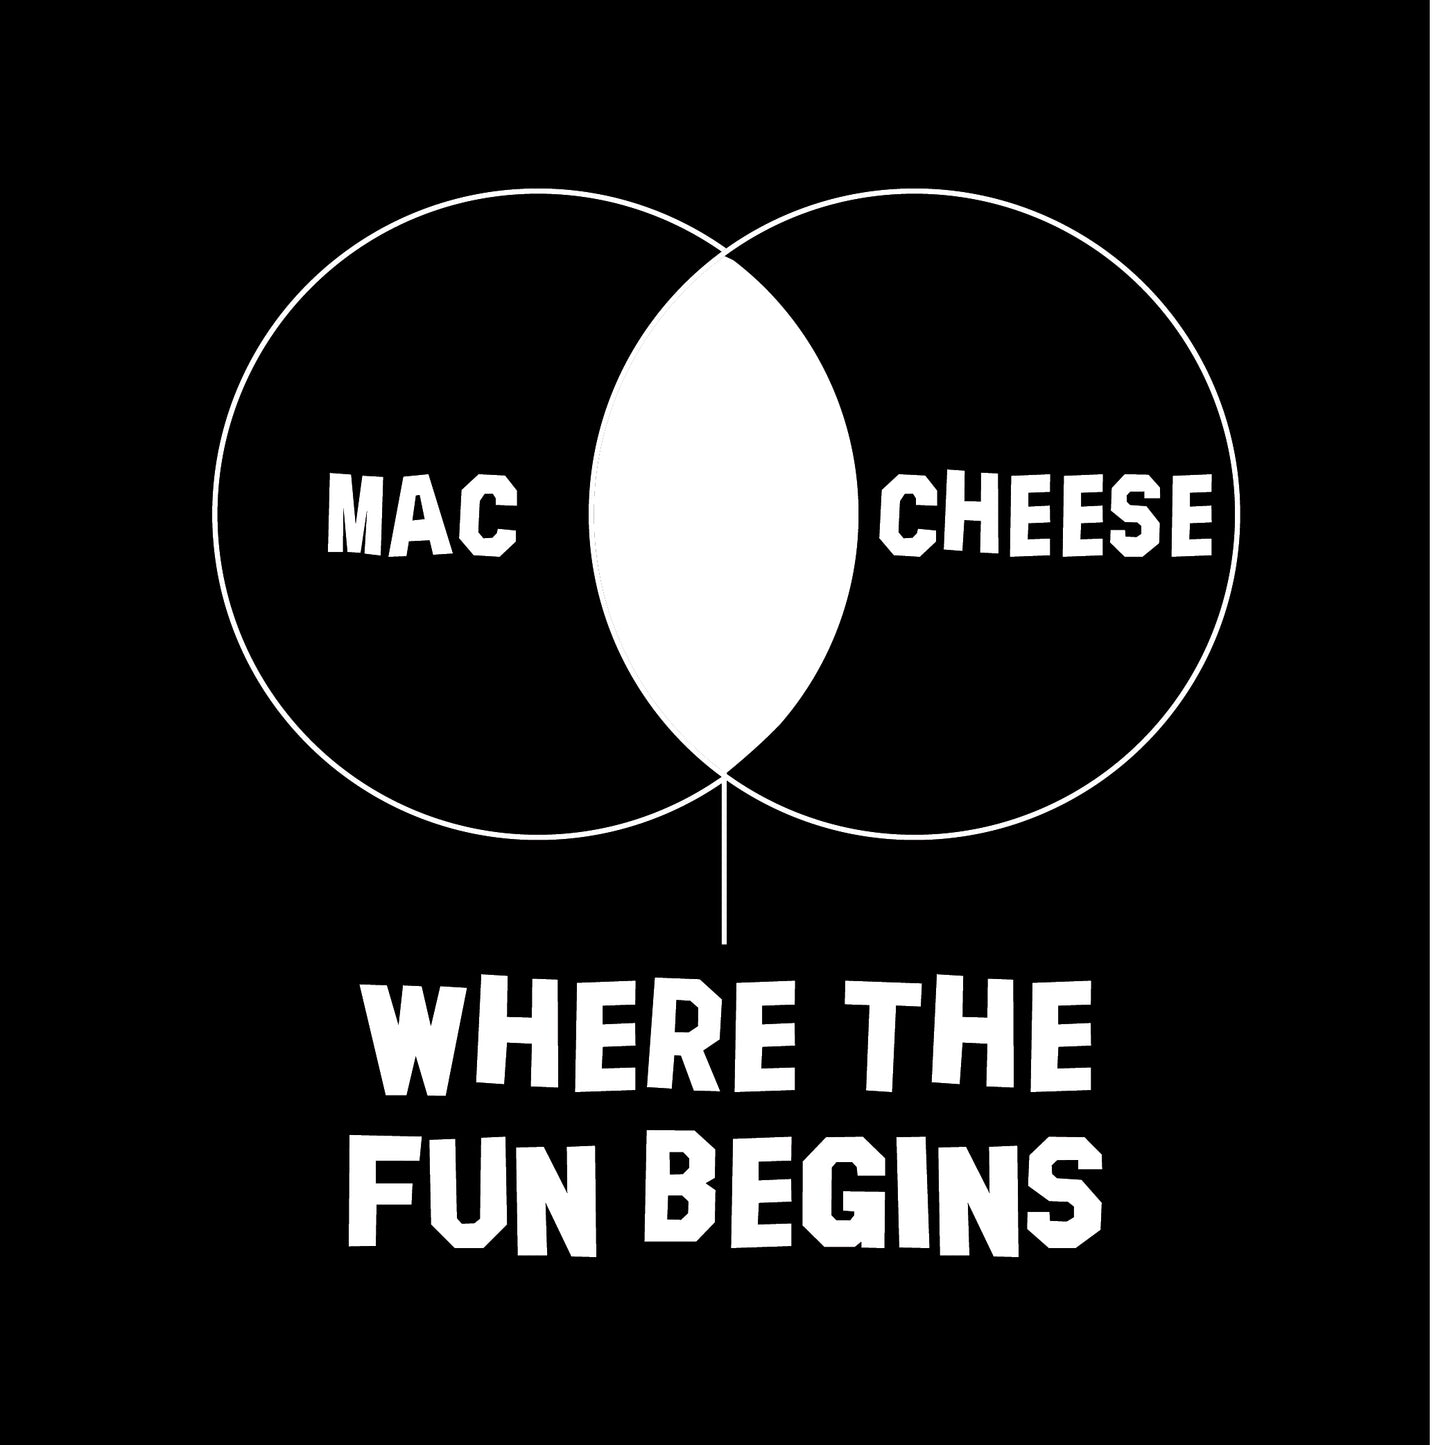 Mac cheese where the fun begins